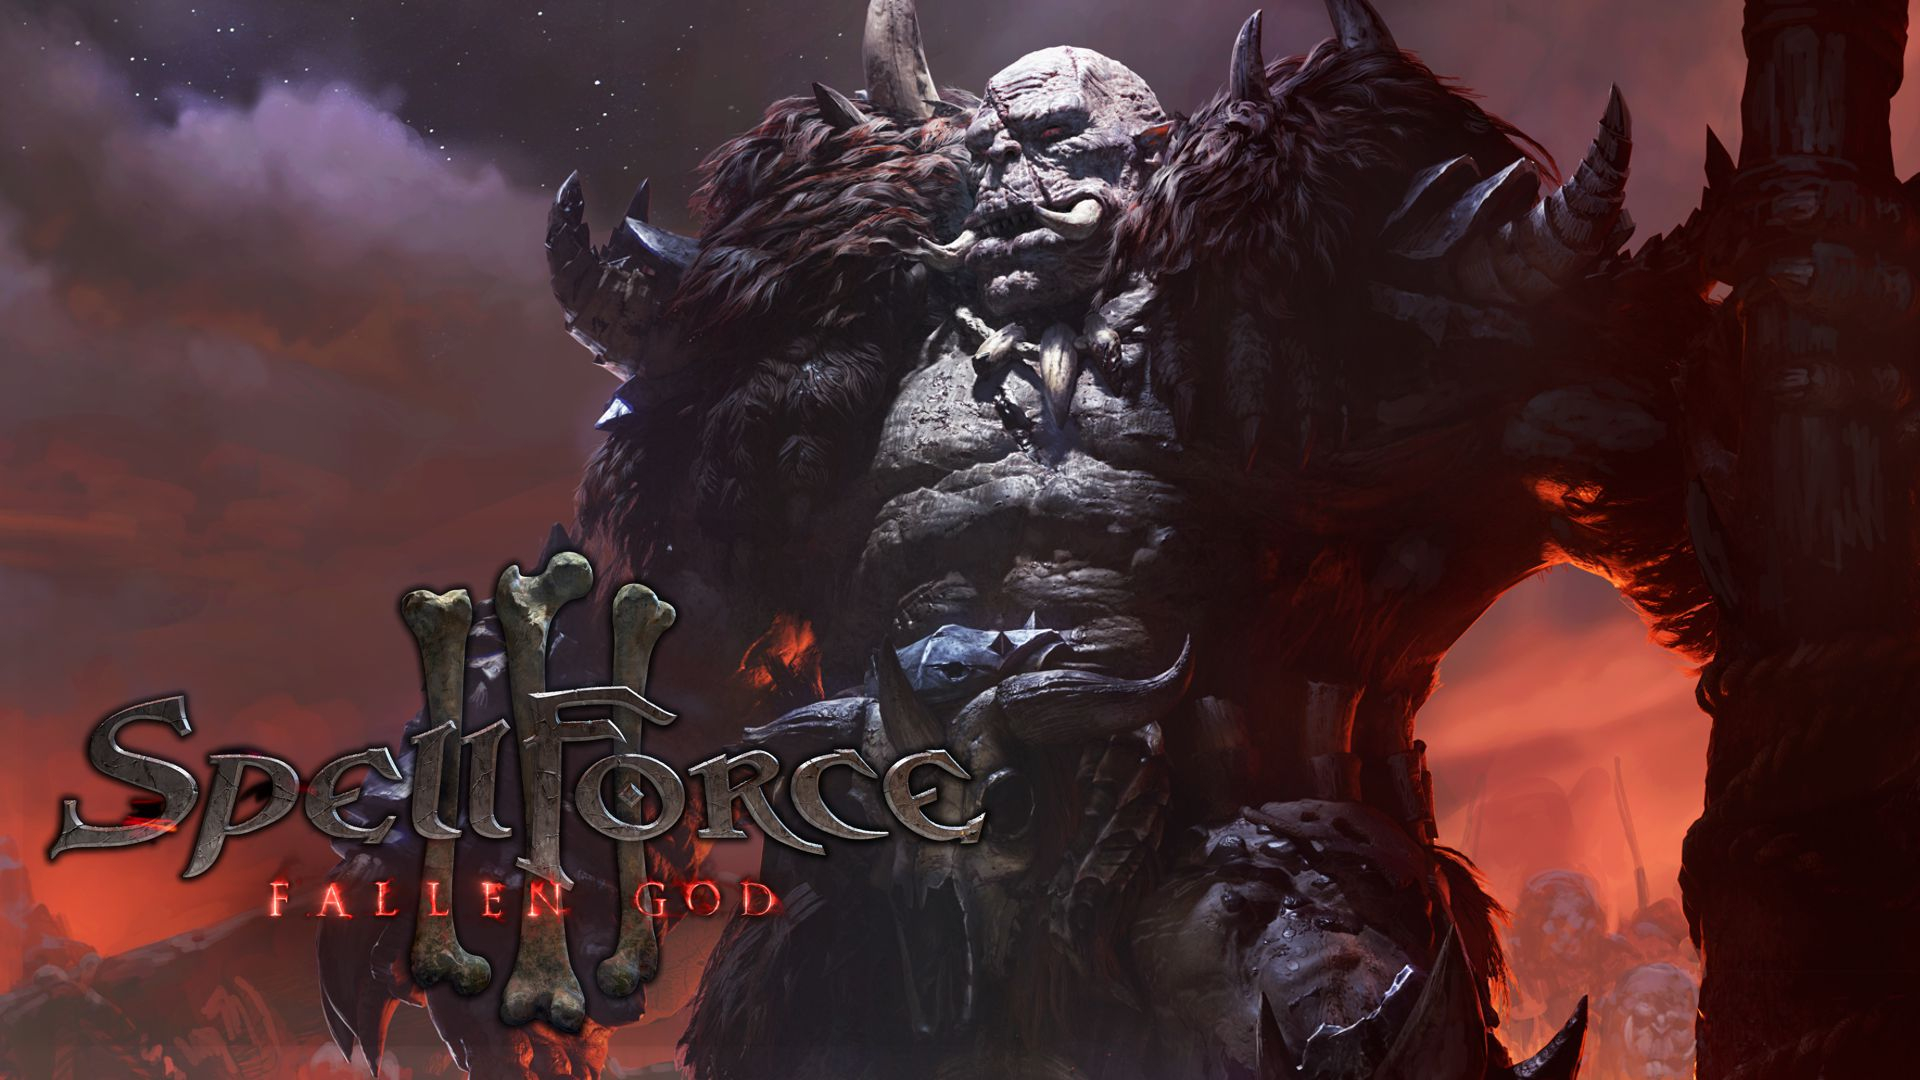 Обложка игры SpellForce 3: Fallen God